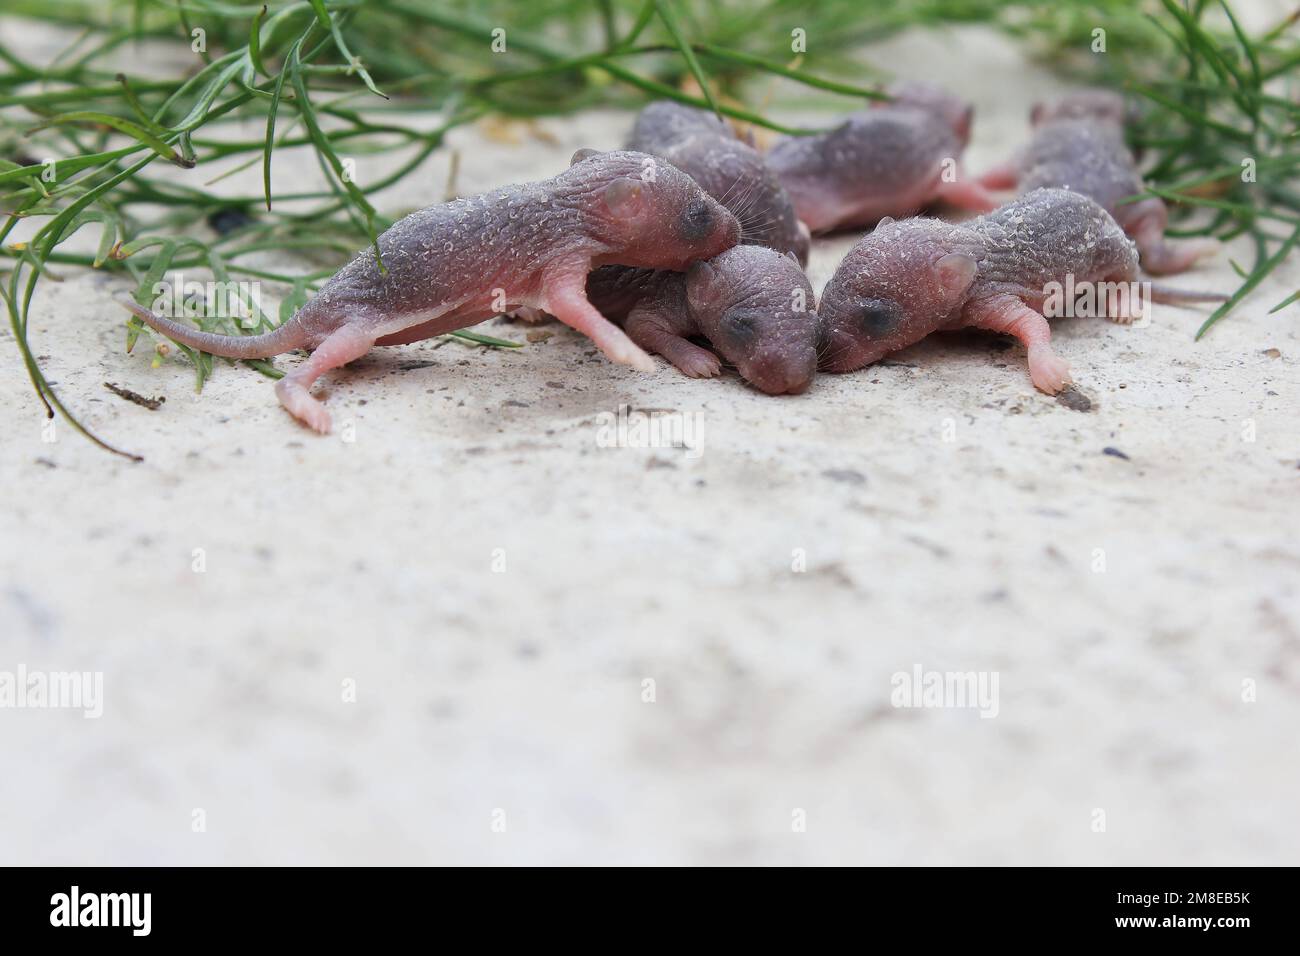 Eine Gruppe kleiner neugeborener Ratten oder Mäuse. Graue kleine Ratten mit geschlossenen Augen. Babyratten und Mäuse, Nagetiere. Medizinische Prüfung an Ratten Stockfoto